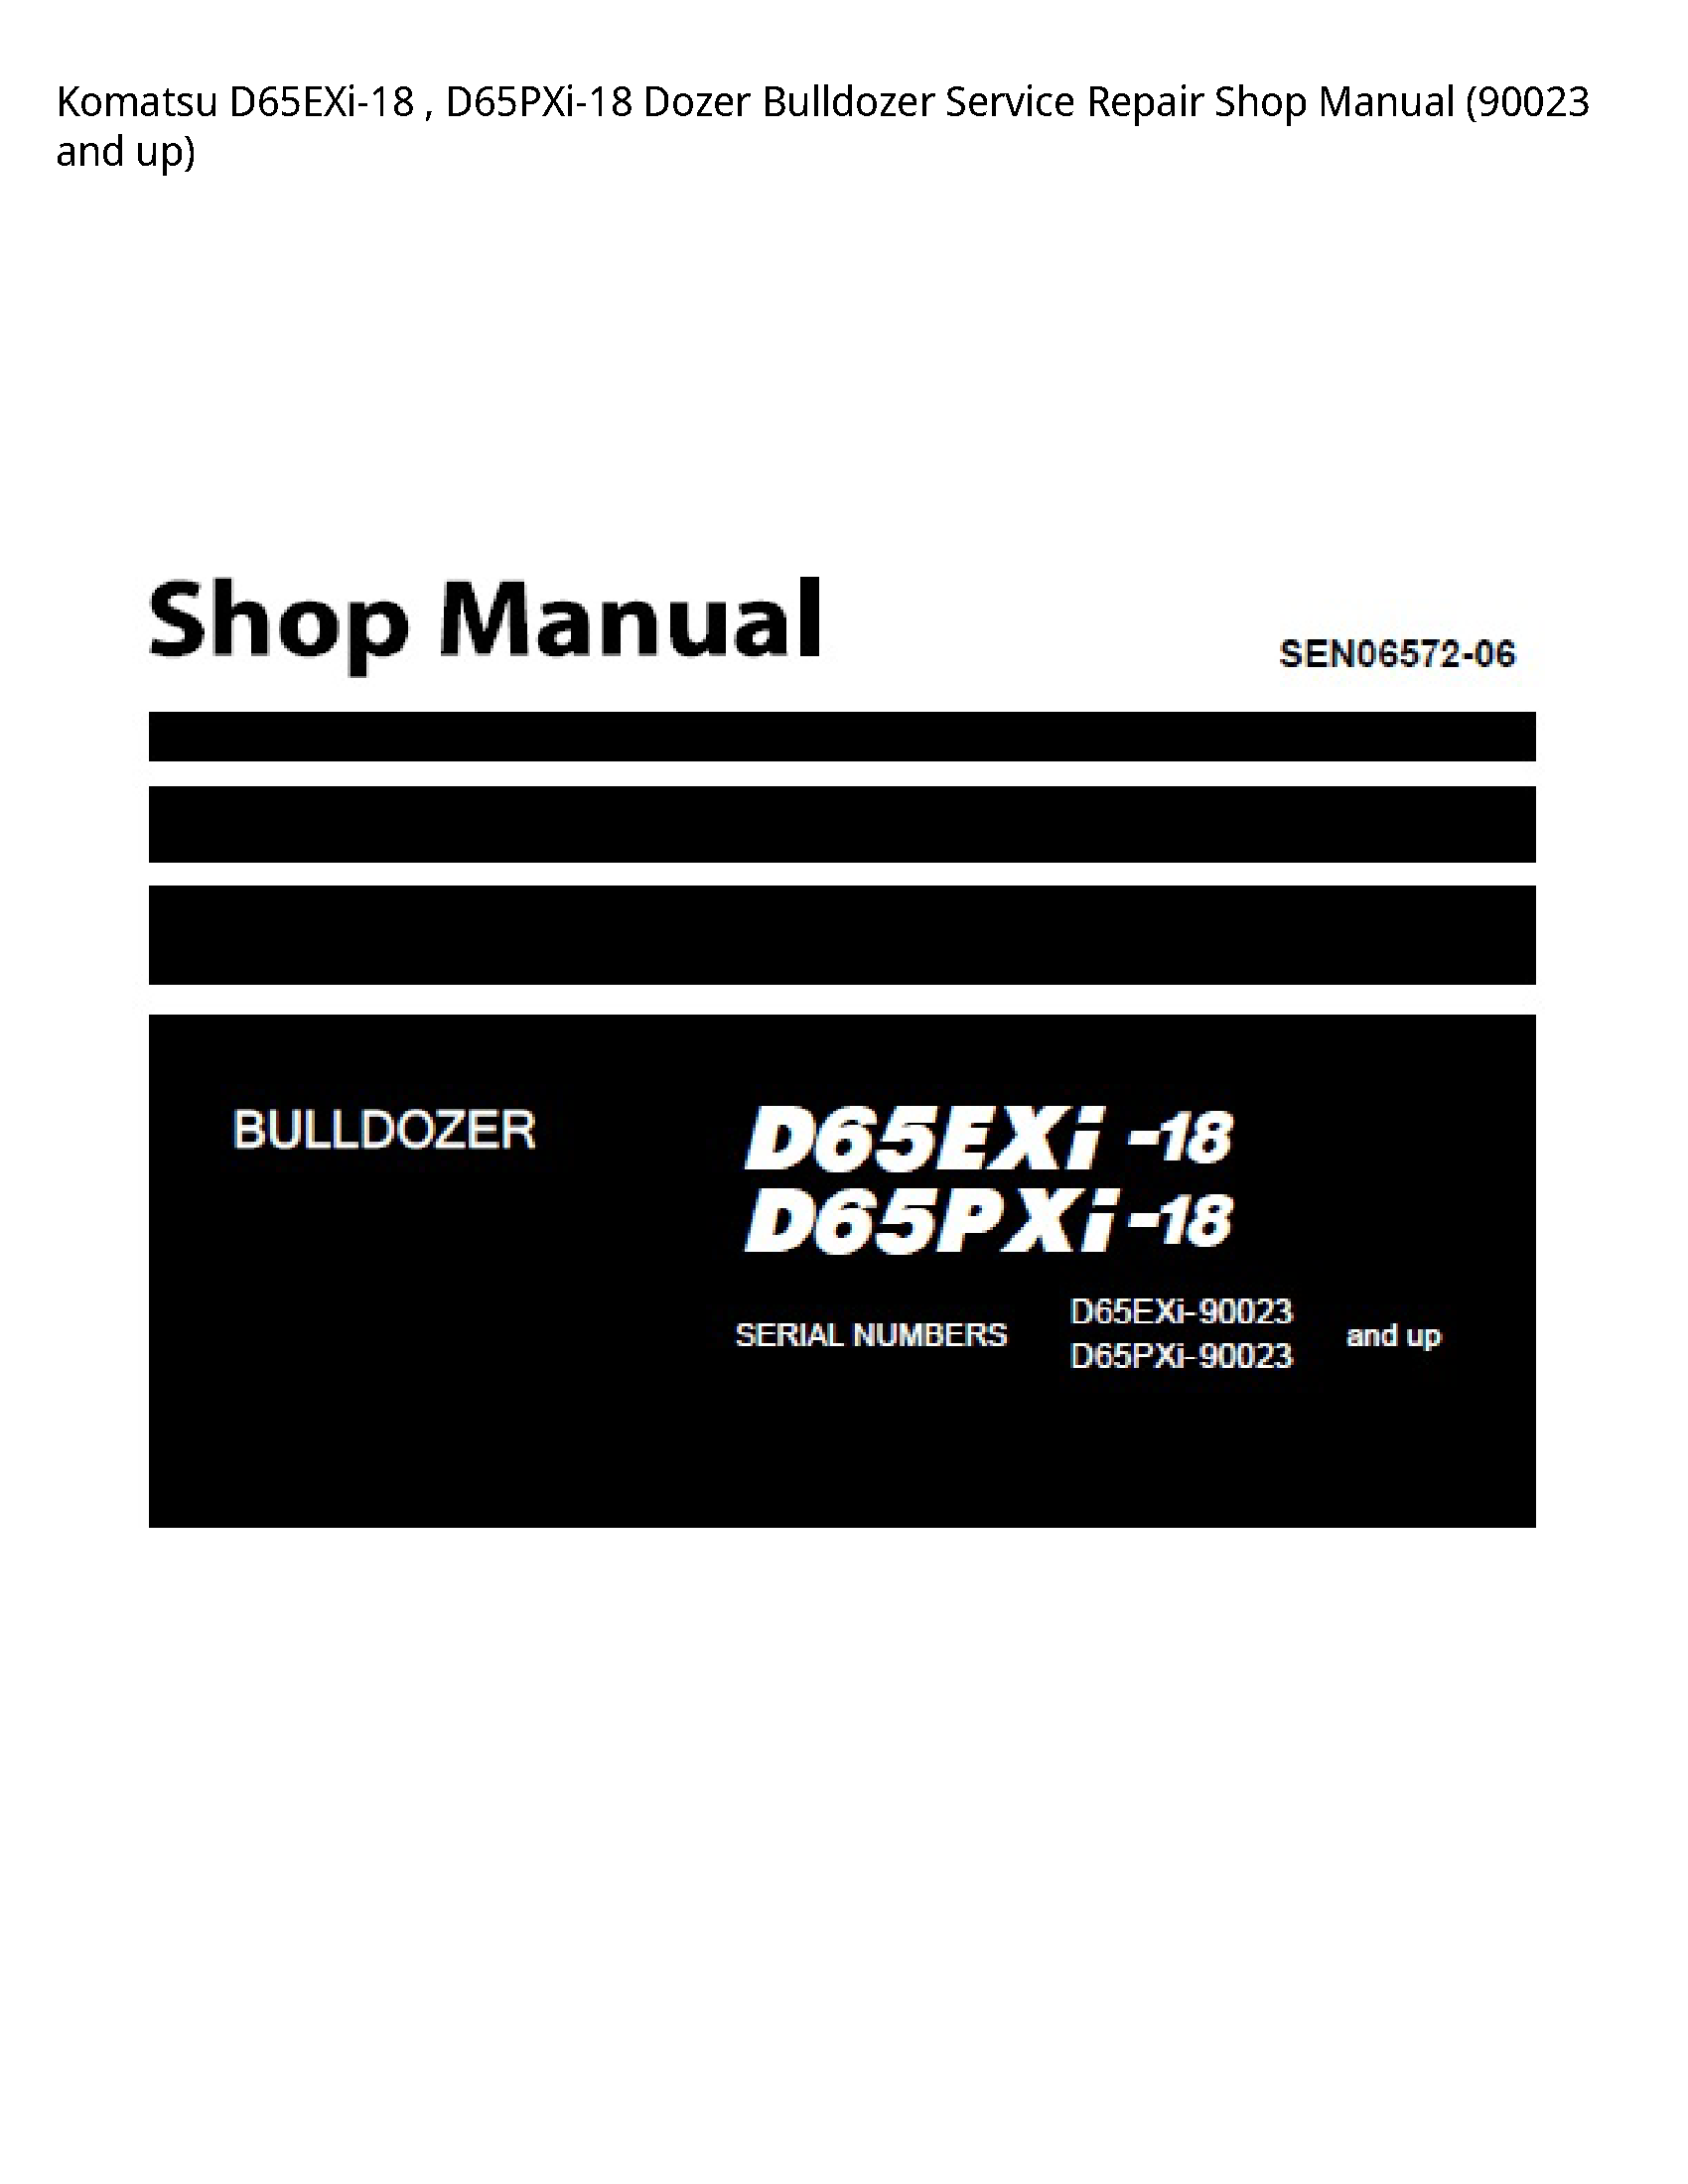 KOMATSU D65EXi-18 Dozer Bulldozer manual